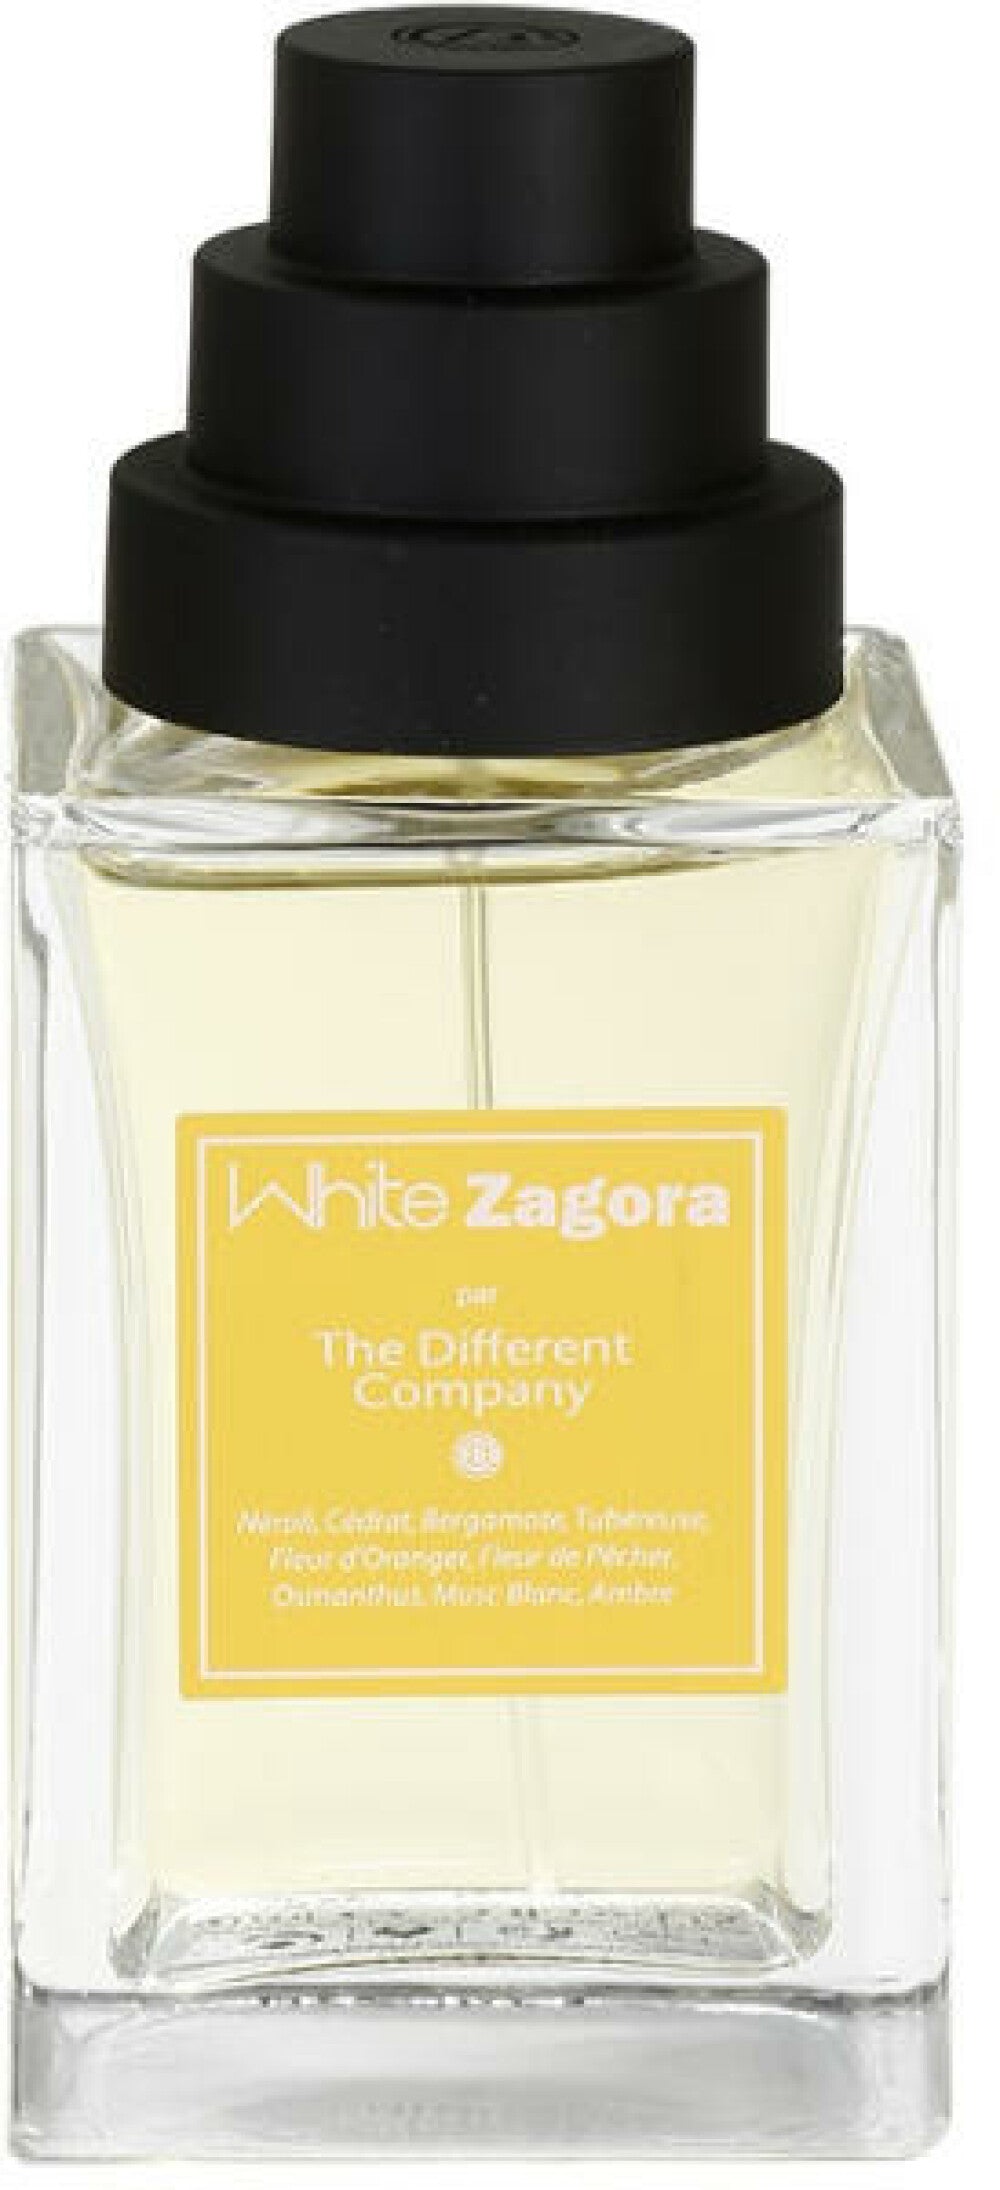 The Different Company, White Zagora, Agua De Colonia, Para Mujer, 100 ml